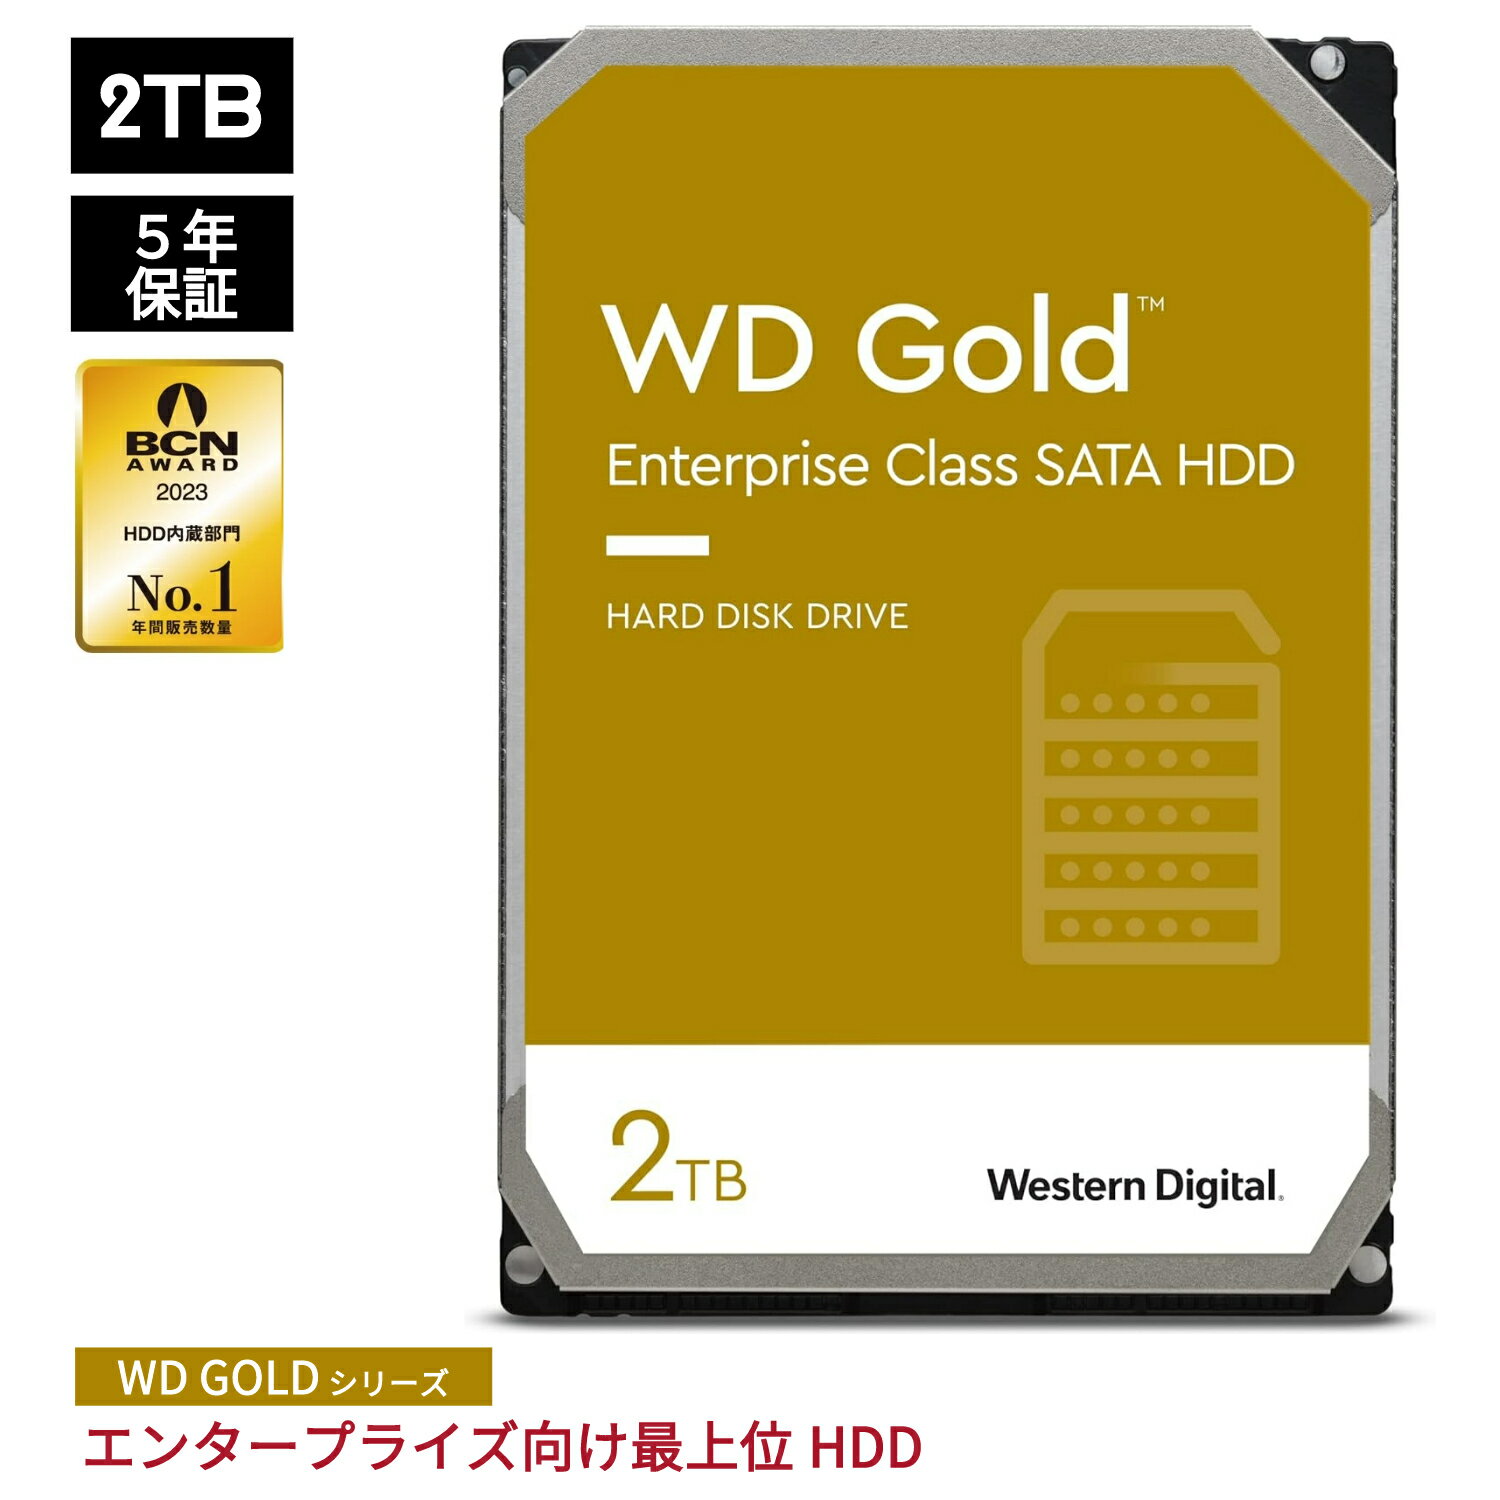 【国内正規流通品】 Western Digital HDD 2TB WD Gold エンタープライズ 3.5インチ 内蔵HDD 保証5年 WD2005FBYZ | 内蔵hdd パソコン ハードディスクドライブ ec 増設 サーバー サーバ 省電力 PCパーツ